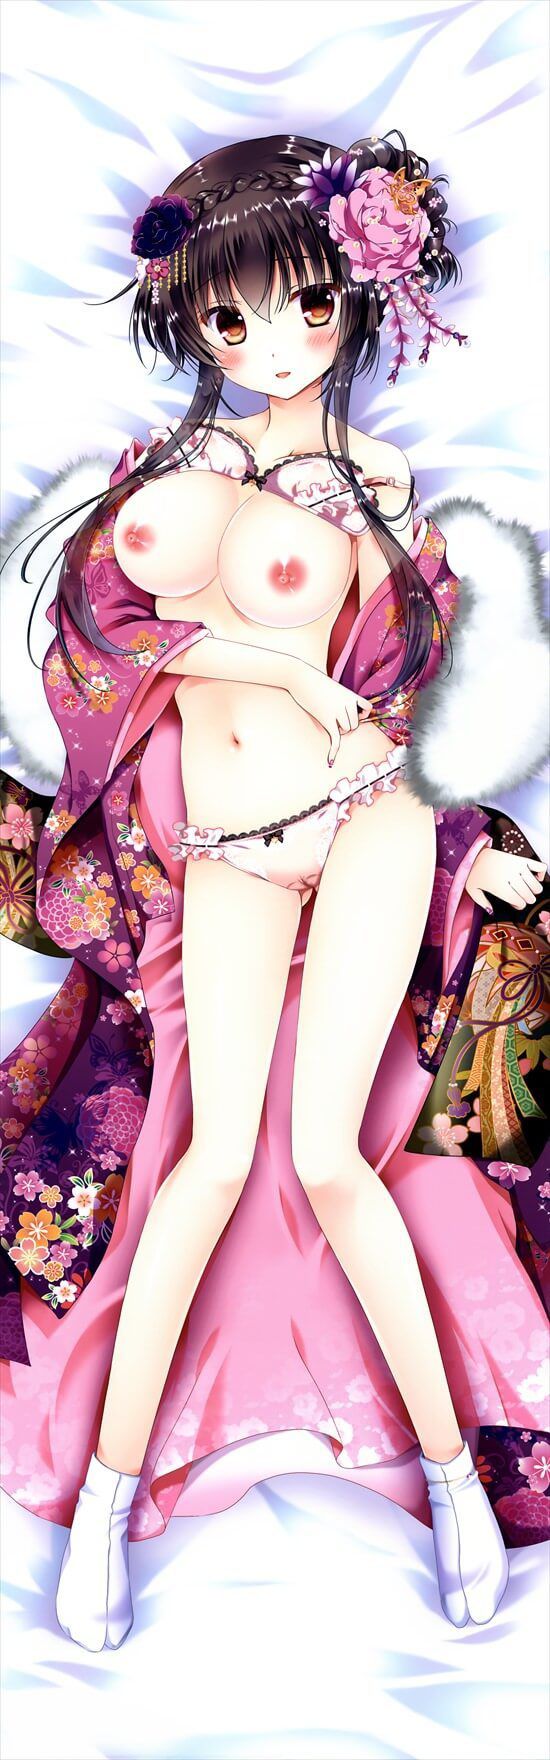 [Dakimakura] image of erotic Dakimakura cover anime game system part 74 43